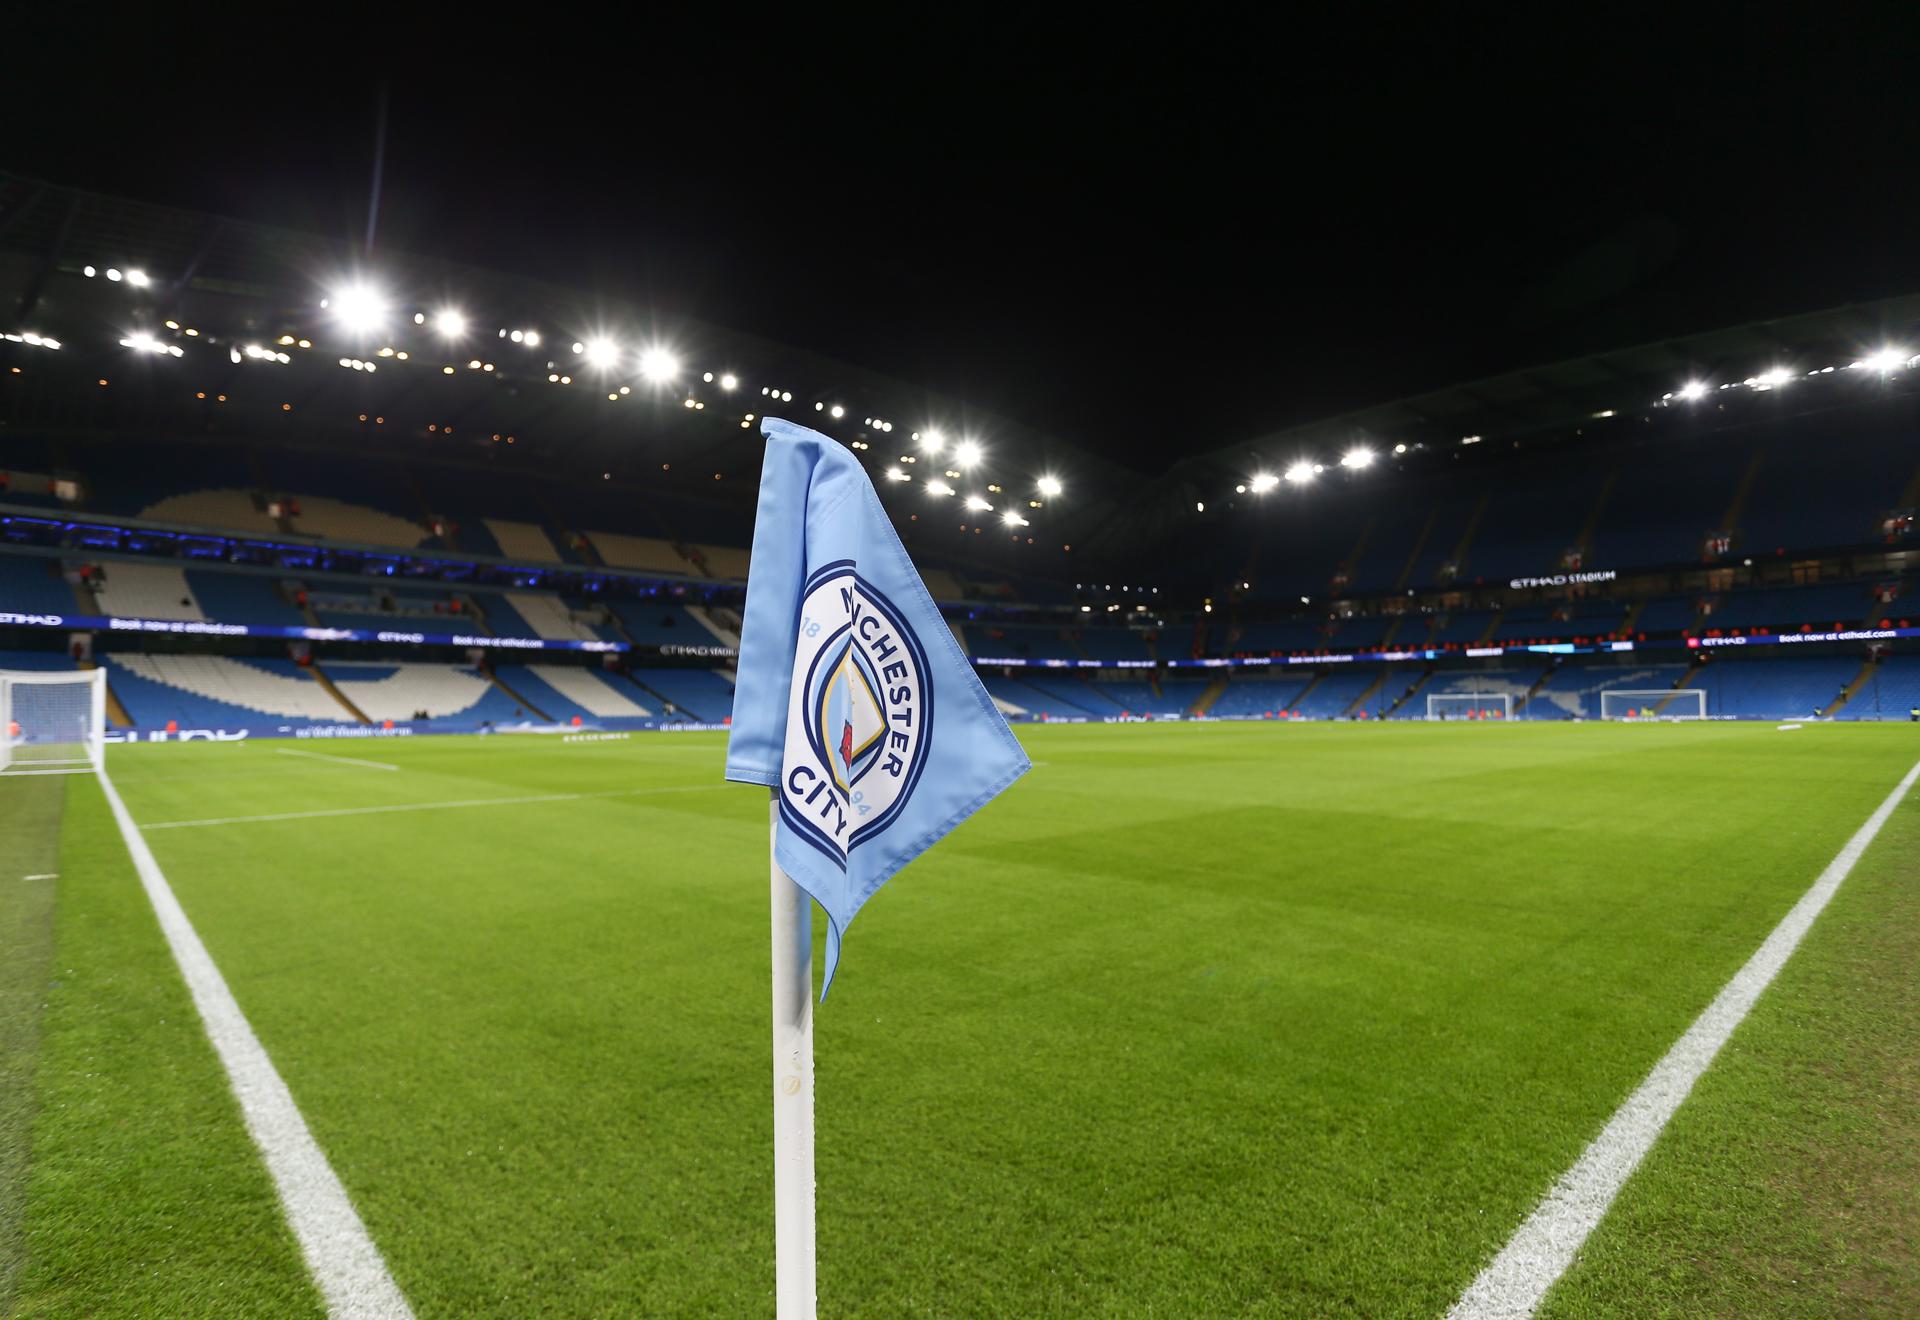 El Manchester City, bajo sospecha: la Premier League investiga graves irregularidades financieras